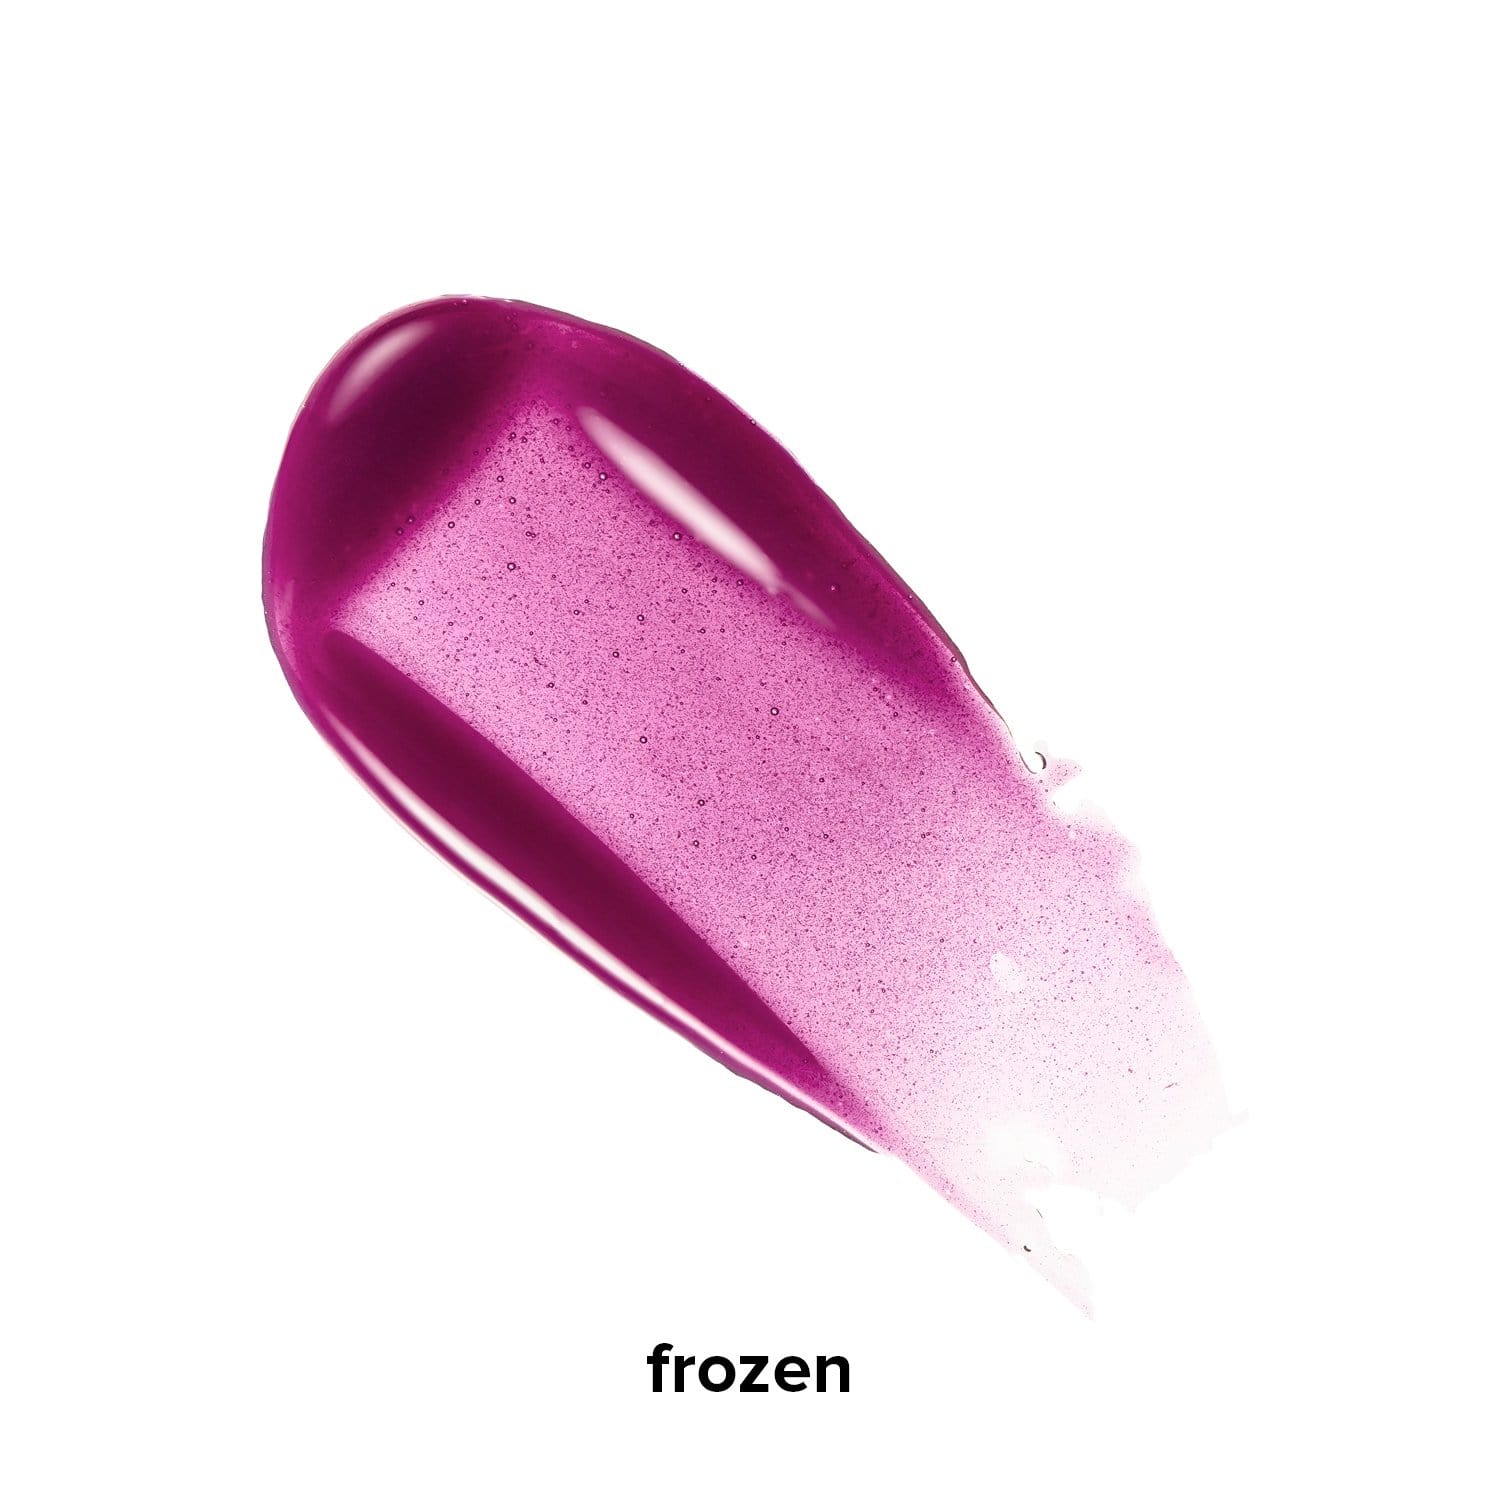 gloss'd Frozen - Hot Purple Makeup supercharged gloss oil